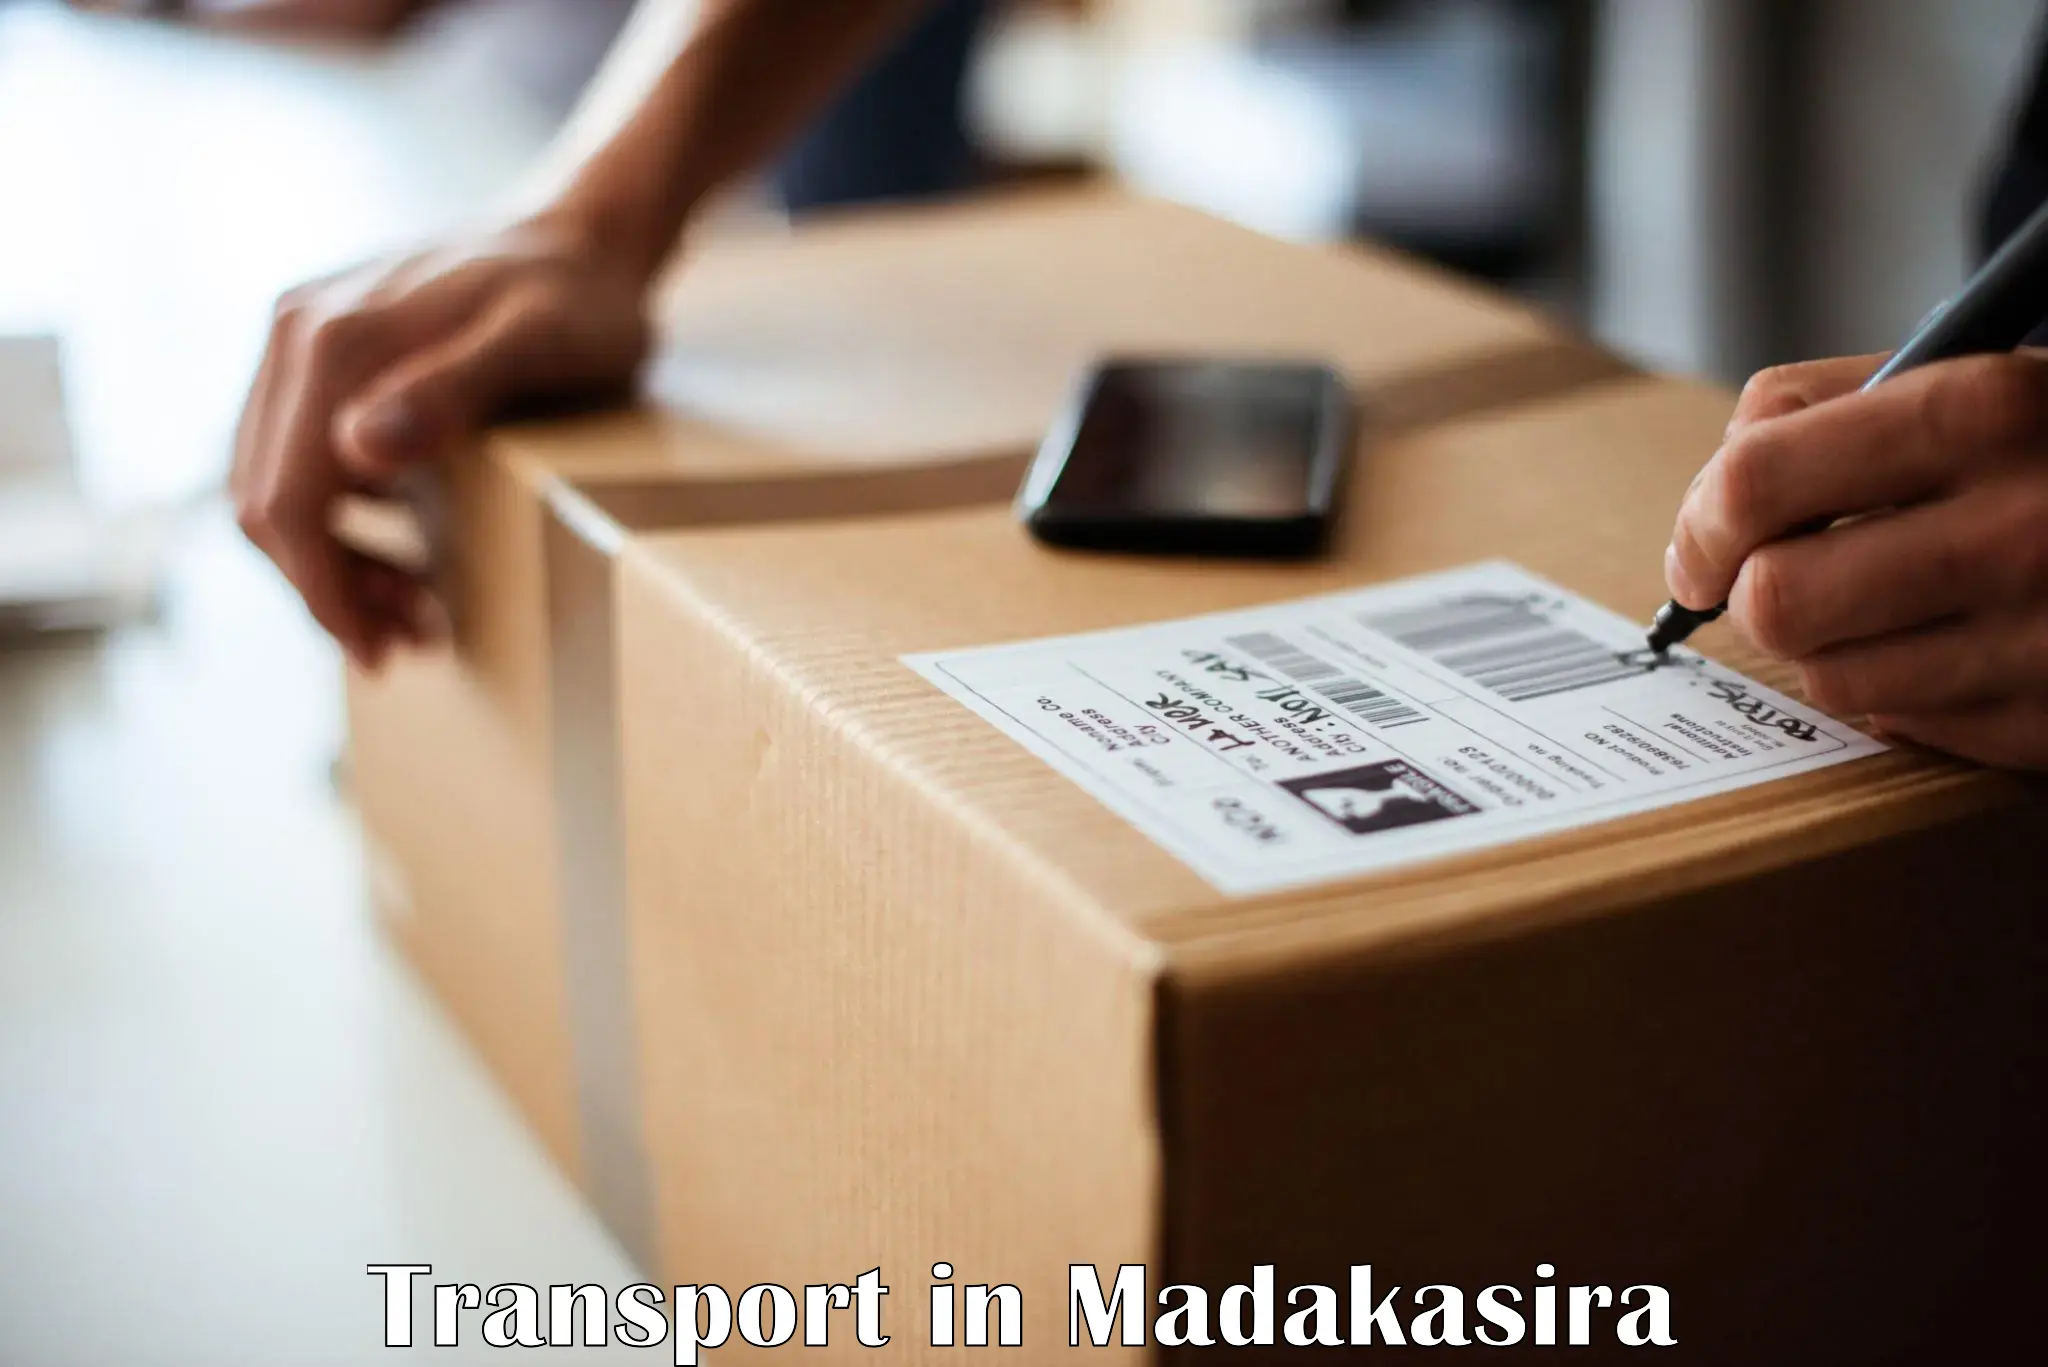 Shipping services in Madakasira